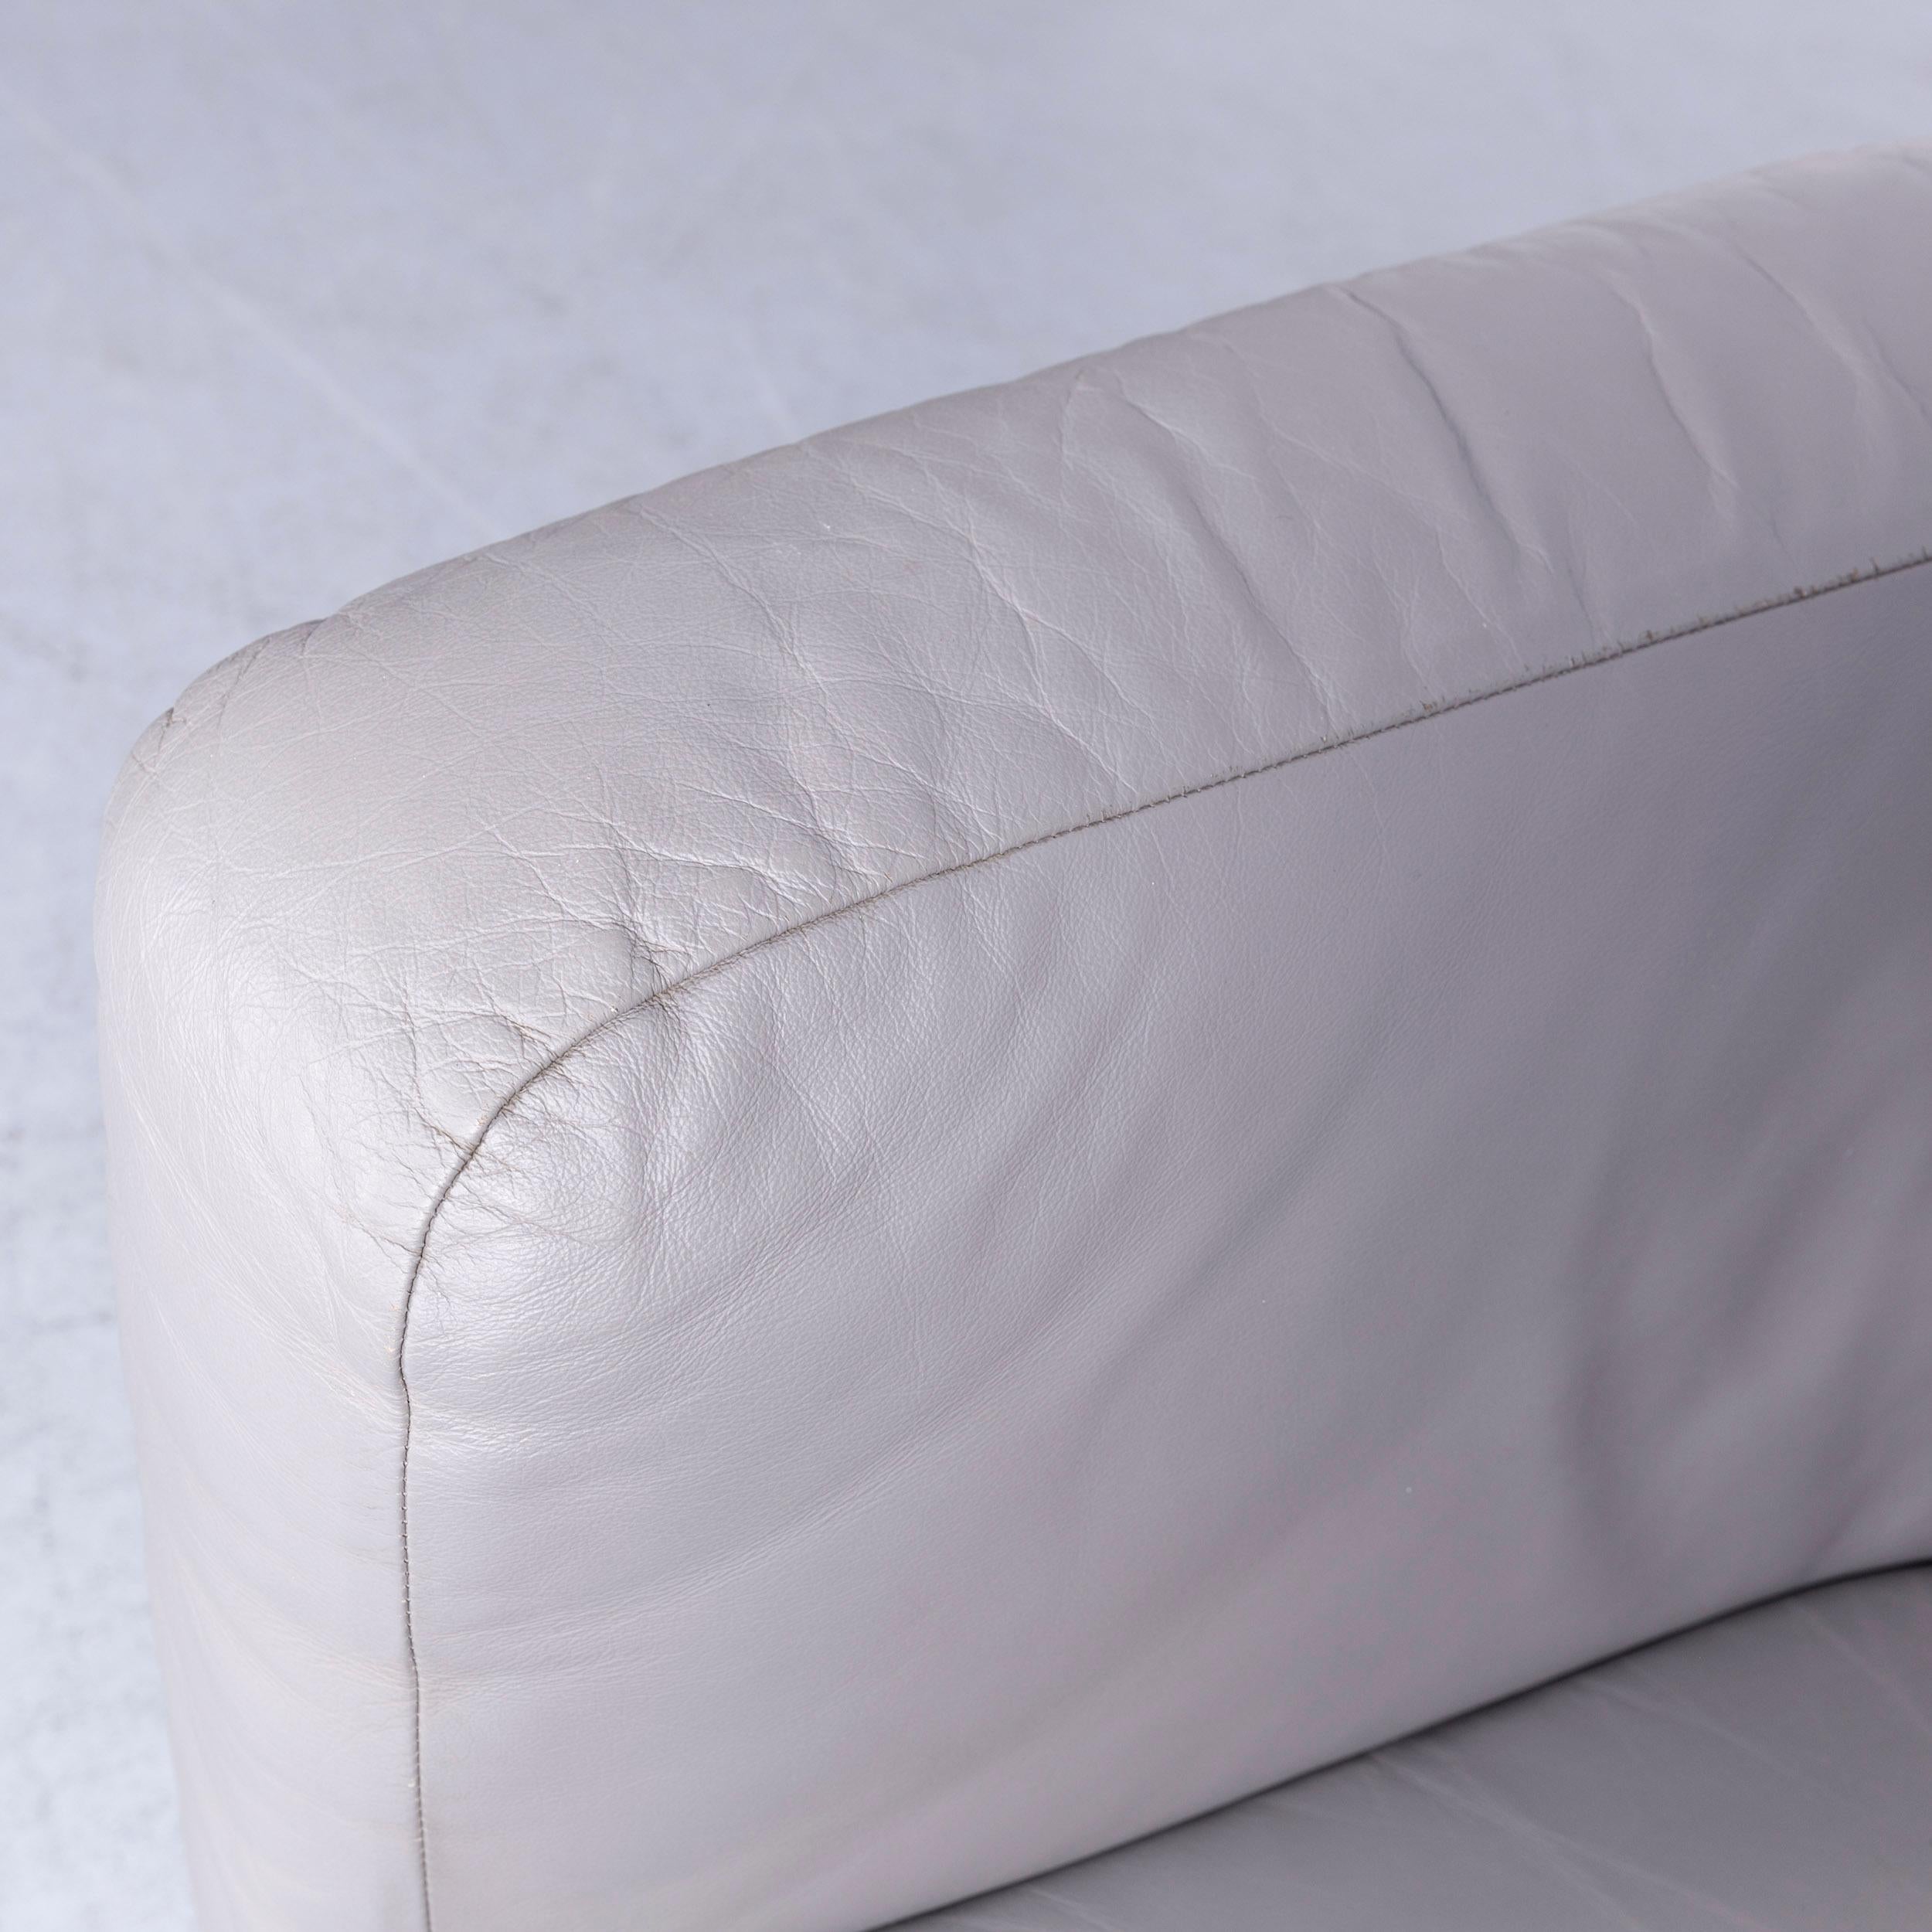 Contemporary Zanotta Onda Designer Sofa Leather Grey Two-Seat Couch